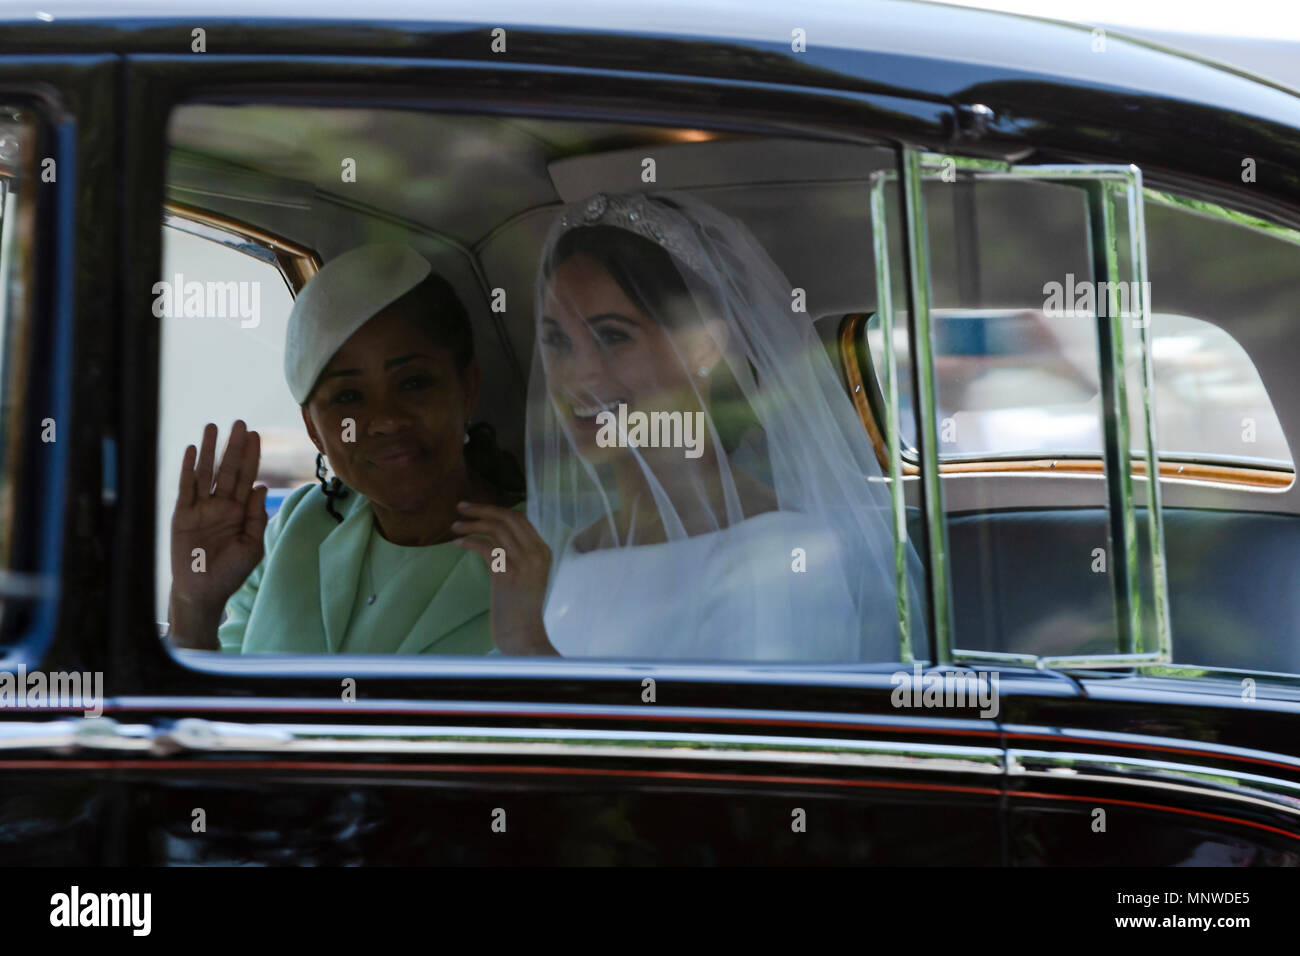 Meghan Markle avec sa mère, sur la façon d'être marié à prince Harry, dans le château de Windsor, en Grande-Bretagne en 2018, souriant et heureux Banque D'Images